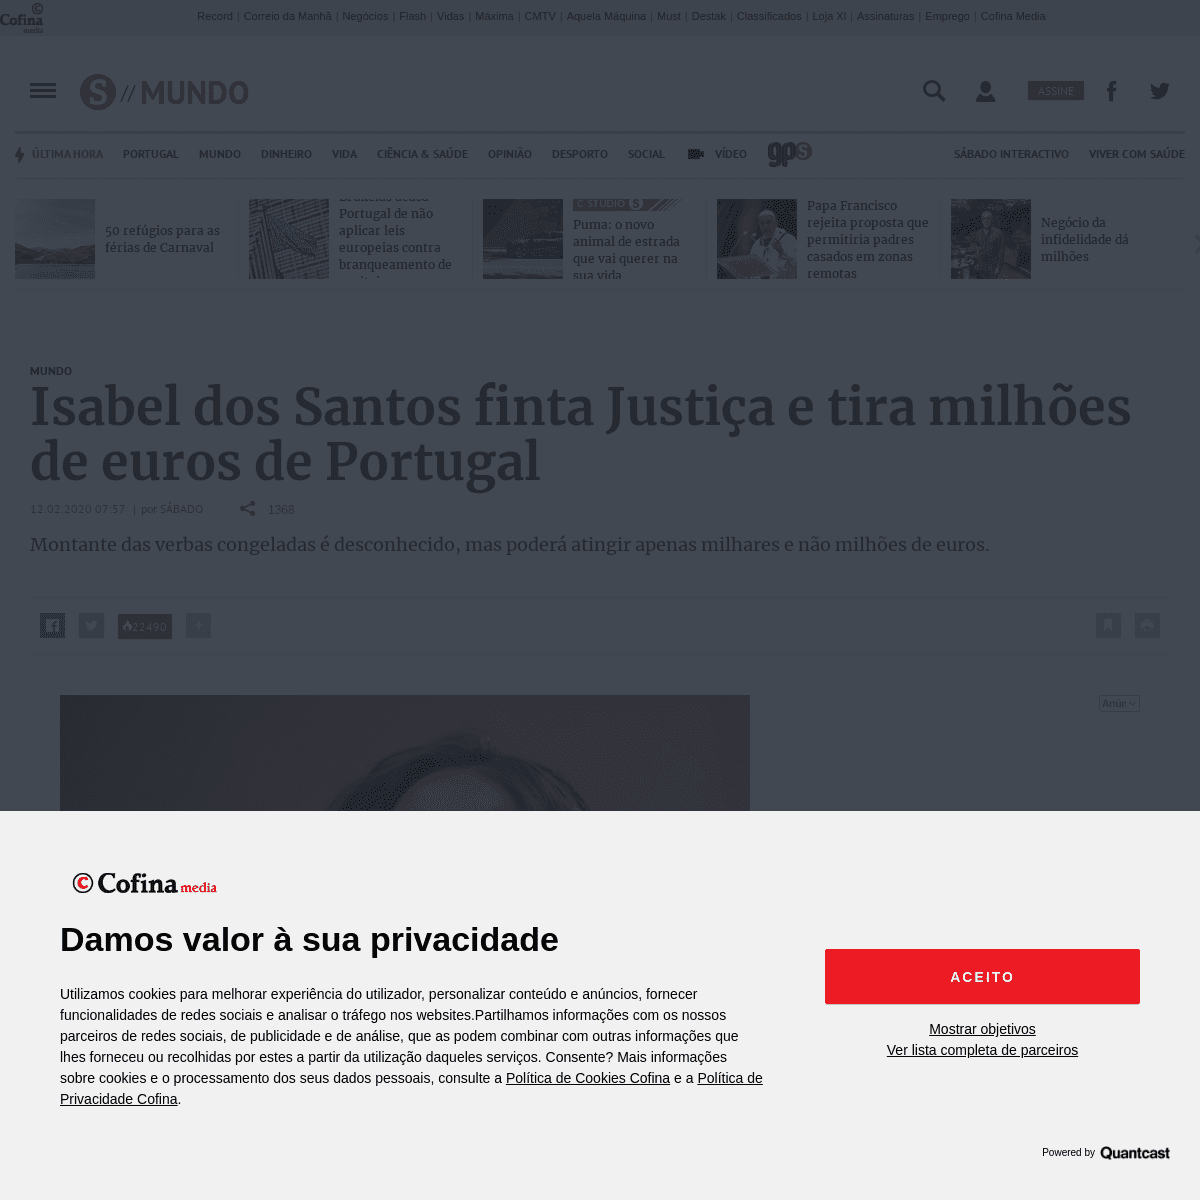 A complete backup of www.sabado.pt/mundo/detalhe/isabel-dos-santos-finta-justica-e-tira-milhoes-de-euros-de-portugal